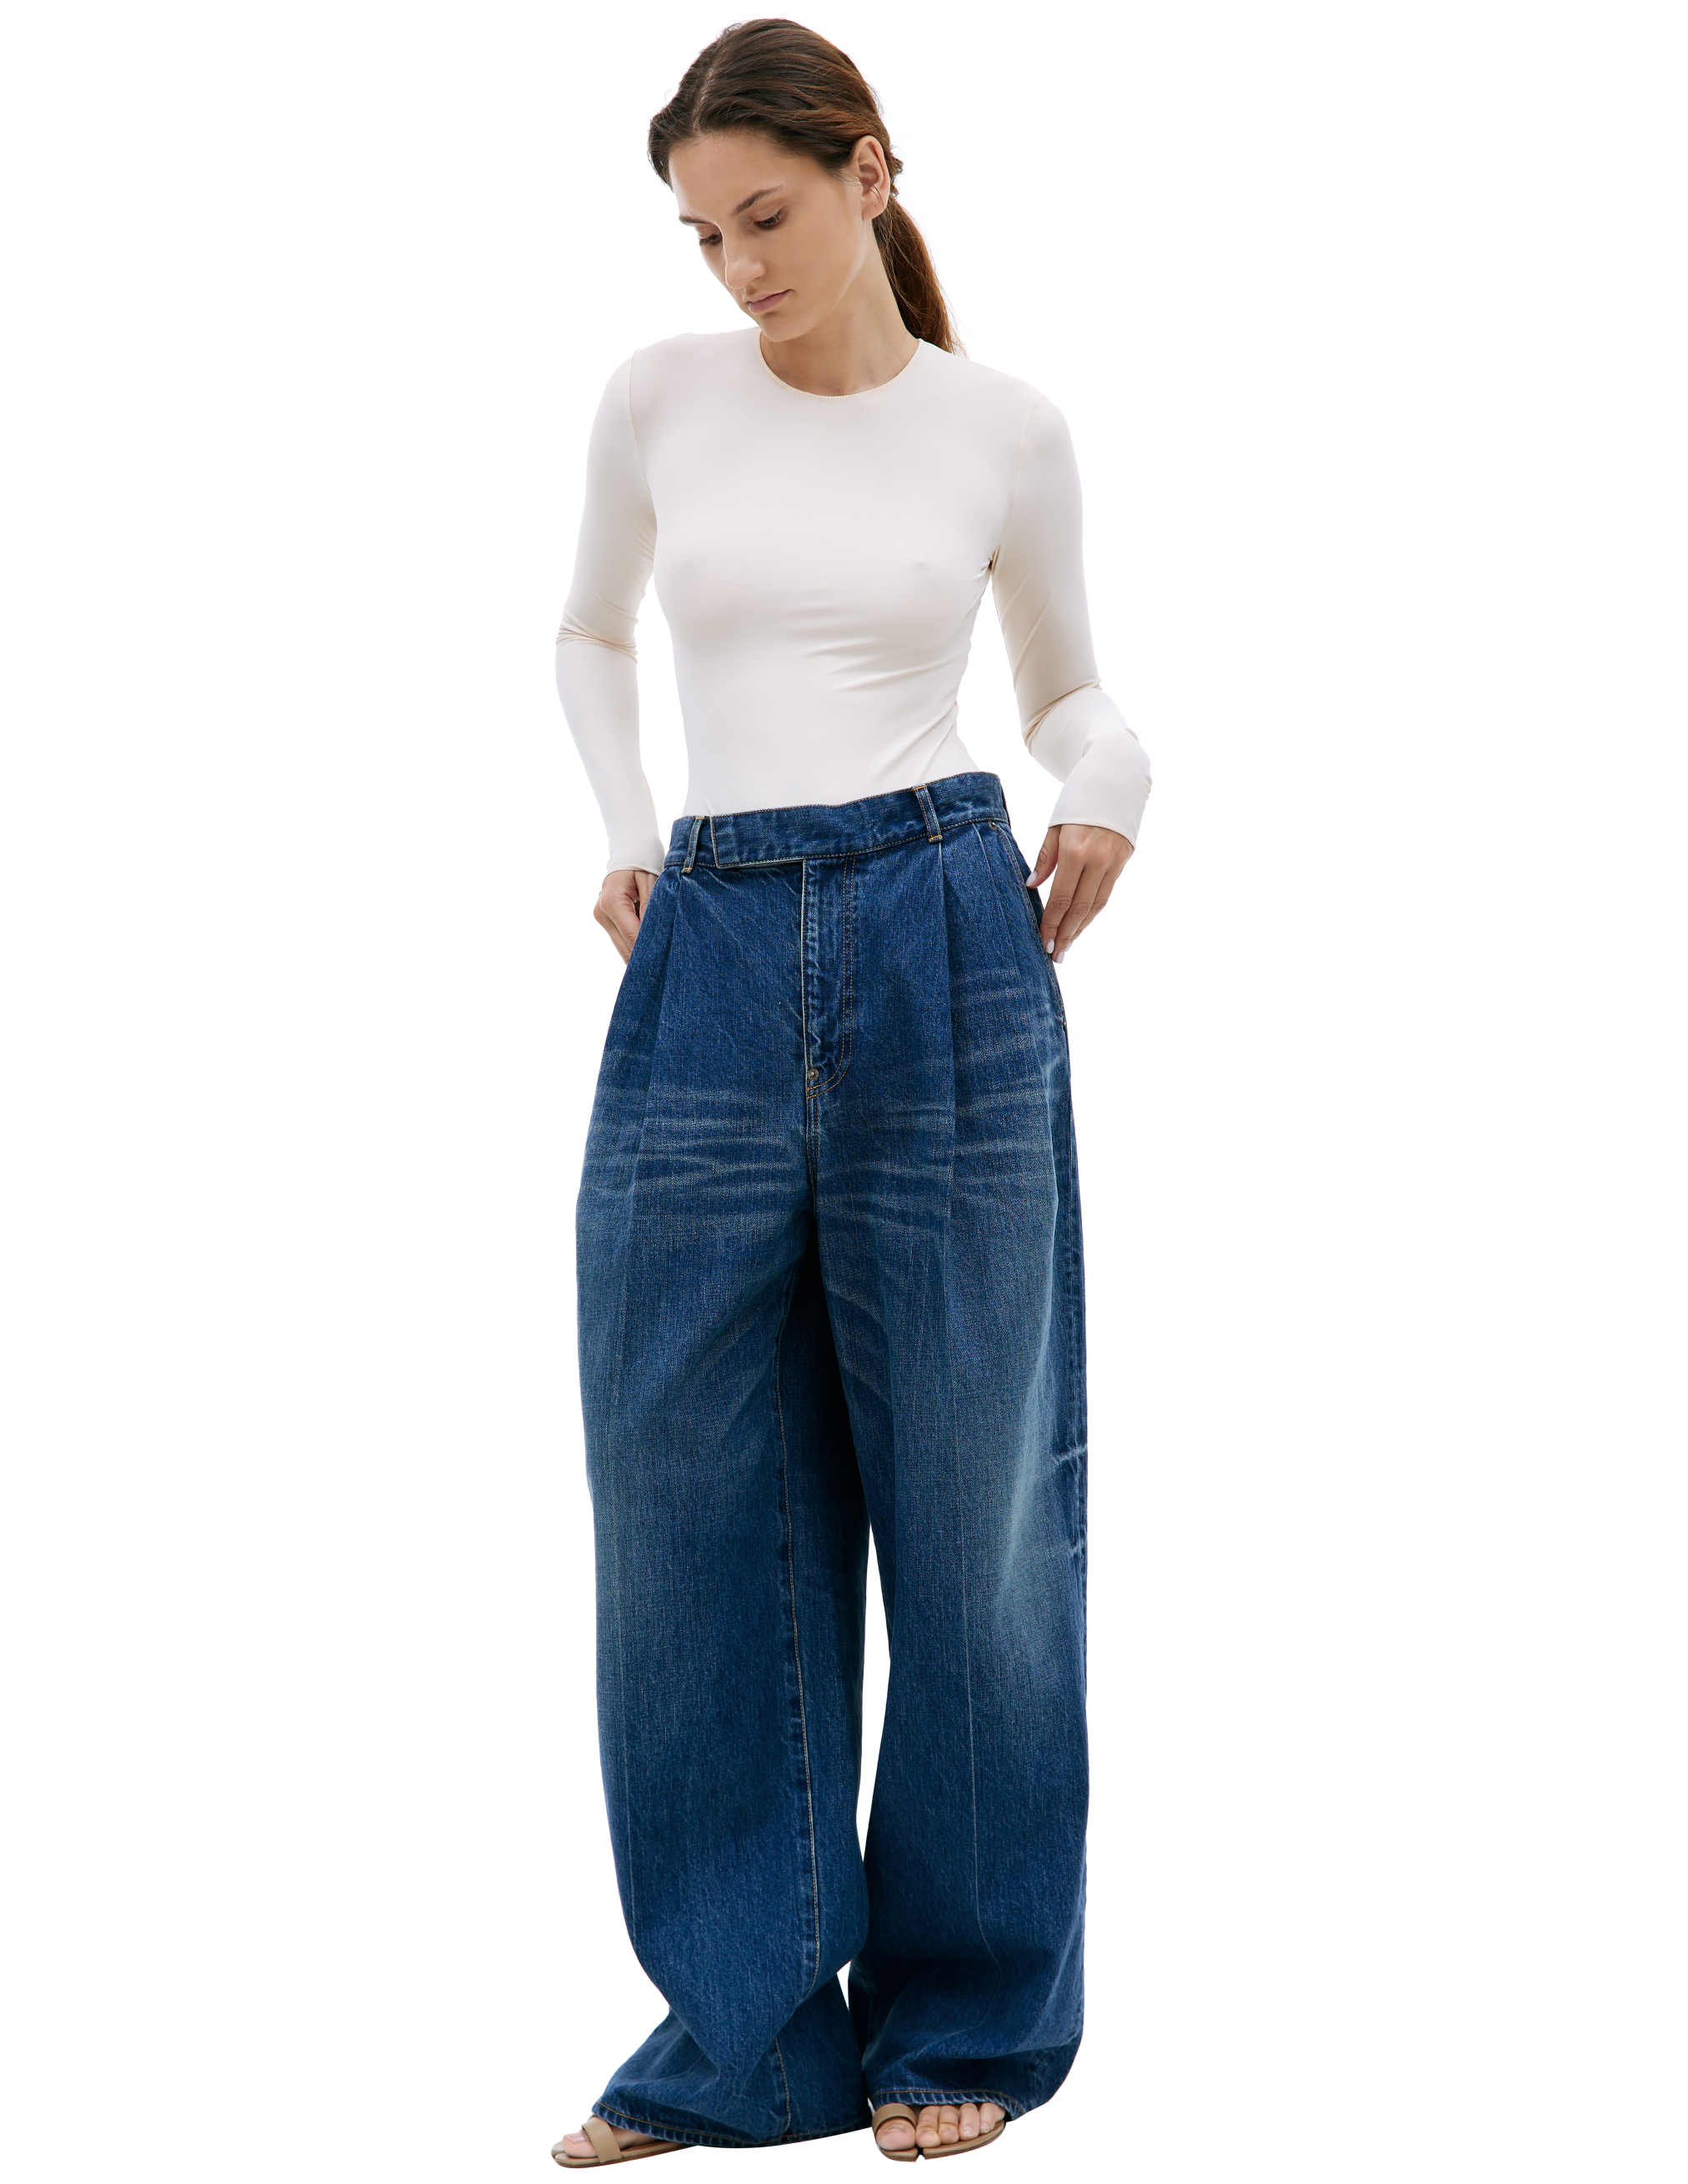 Широкие джинсы с защипами Undercover UC1C1504-2/INDIGO, размер 3 UC1C1504-2/INDIGO - фото 1